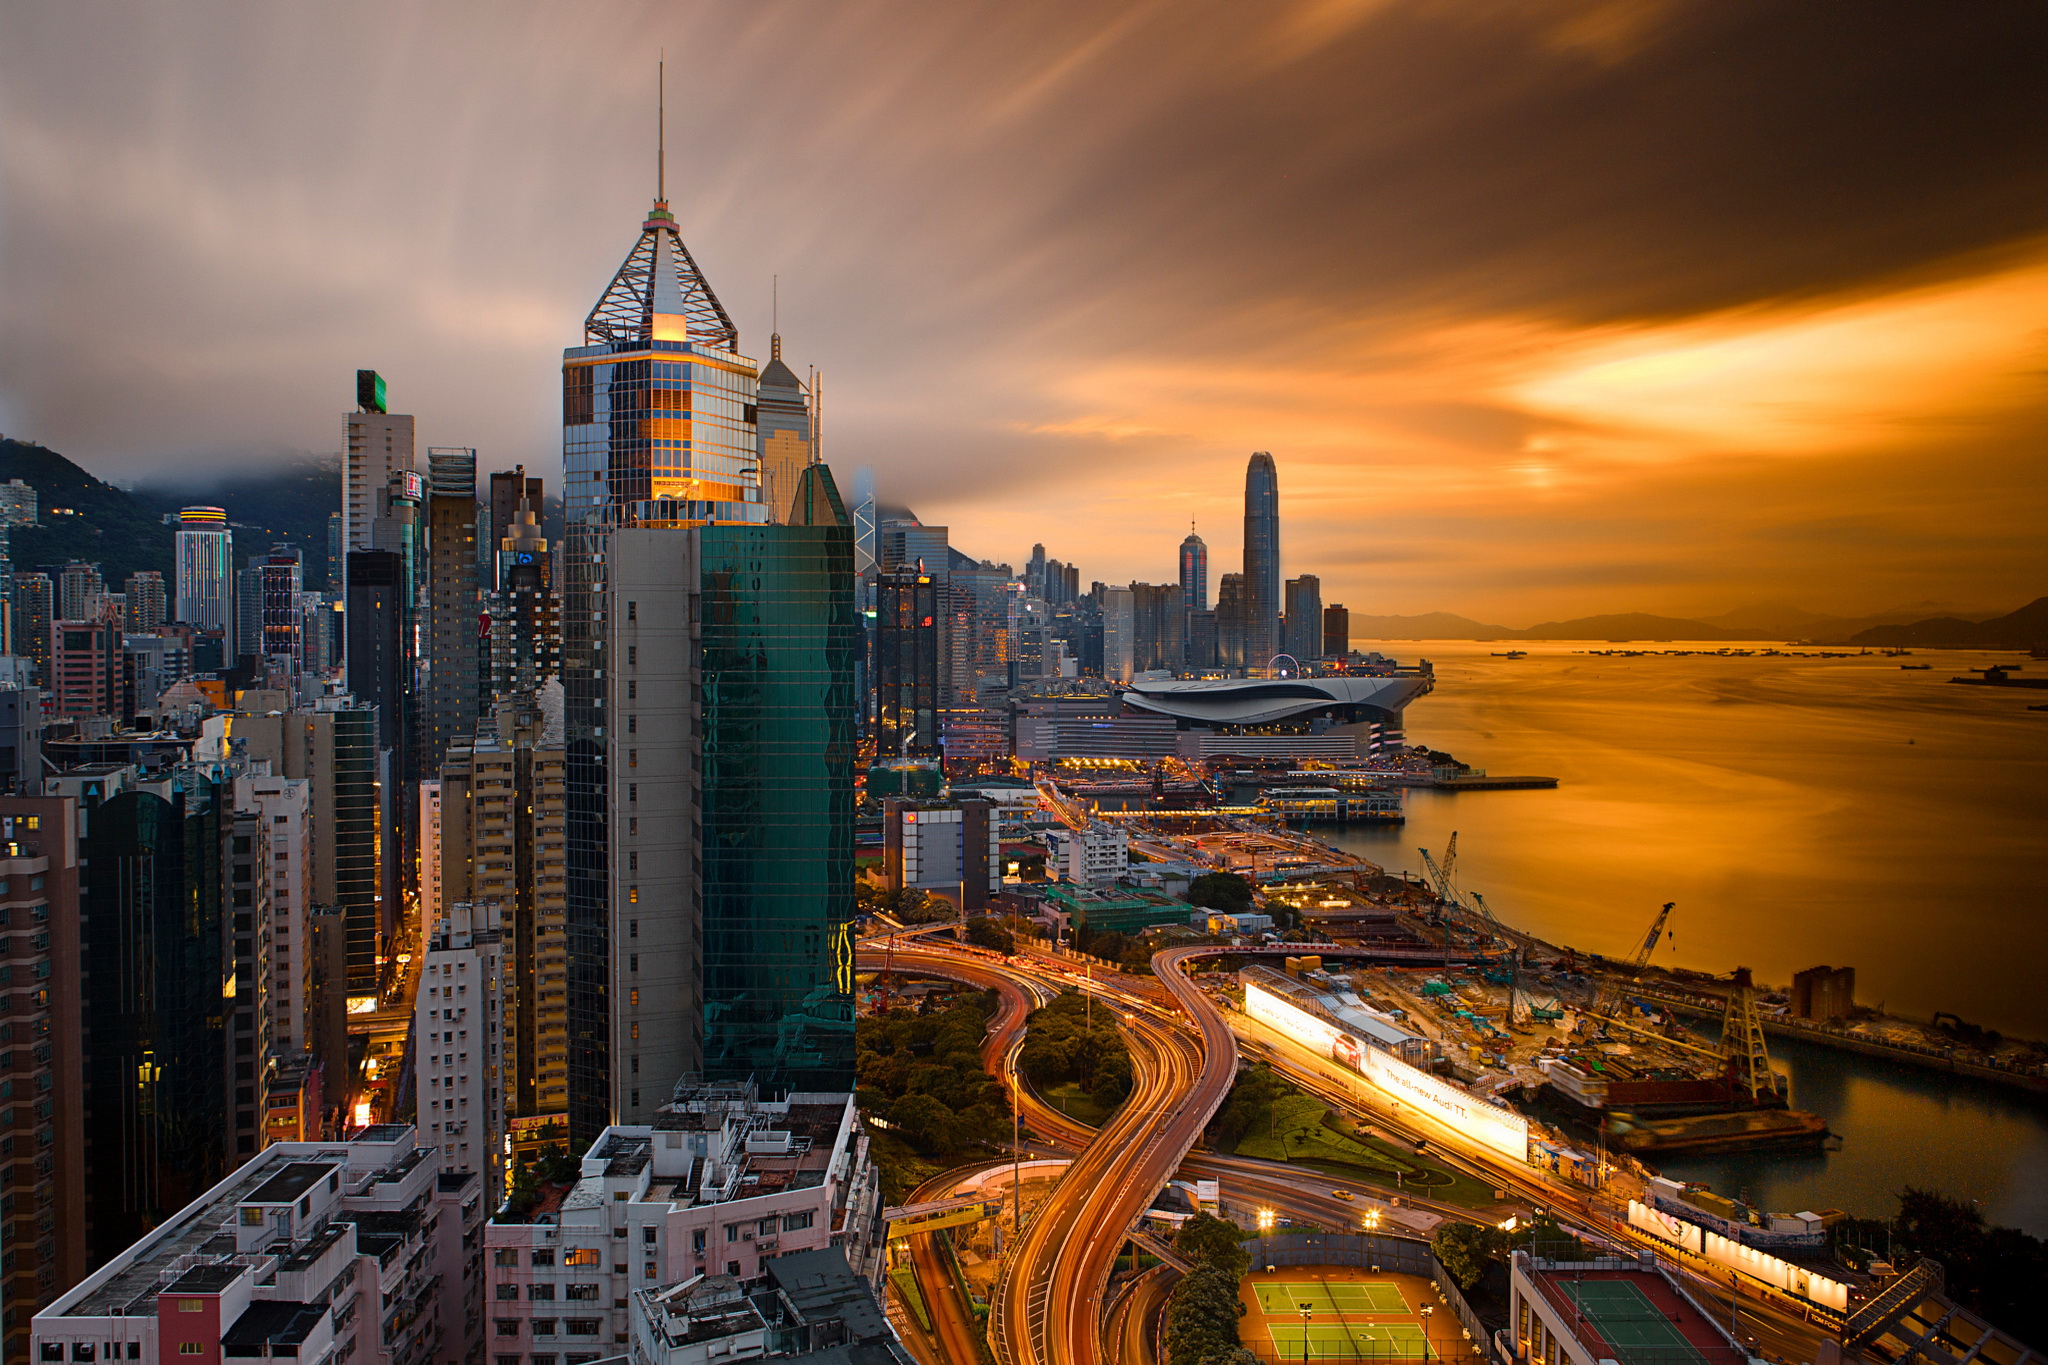 Hong Kong at Sunset